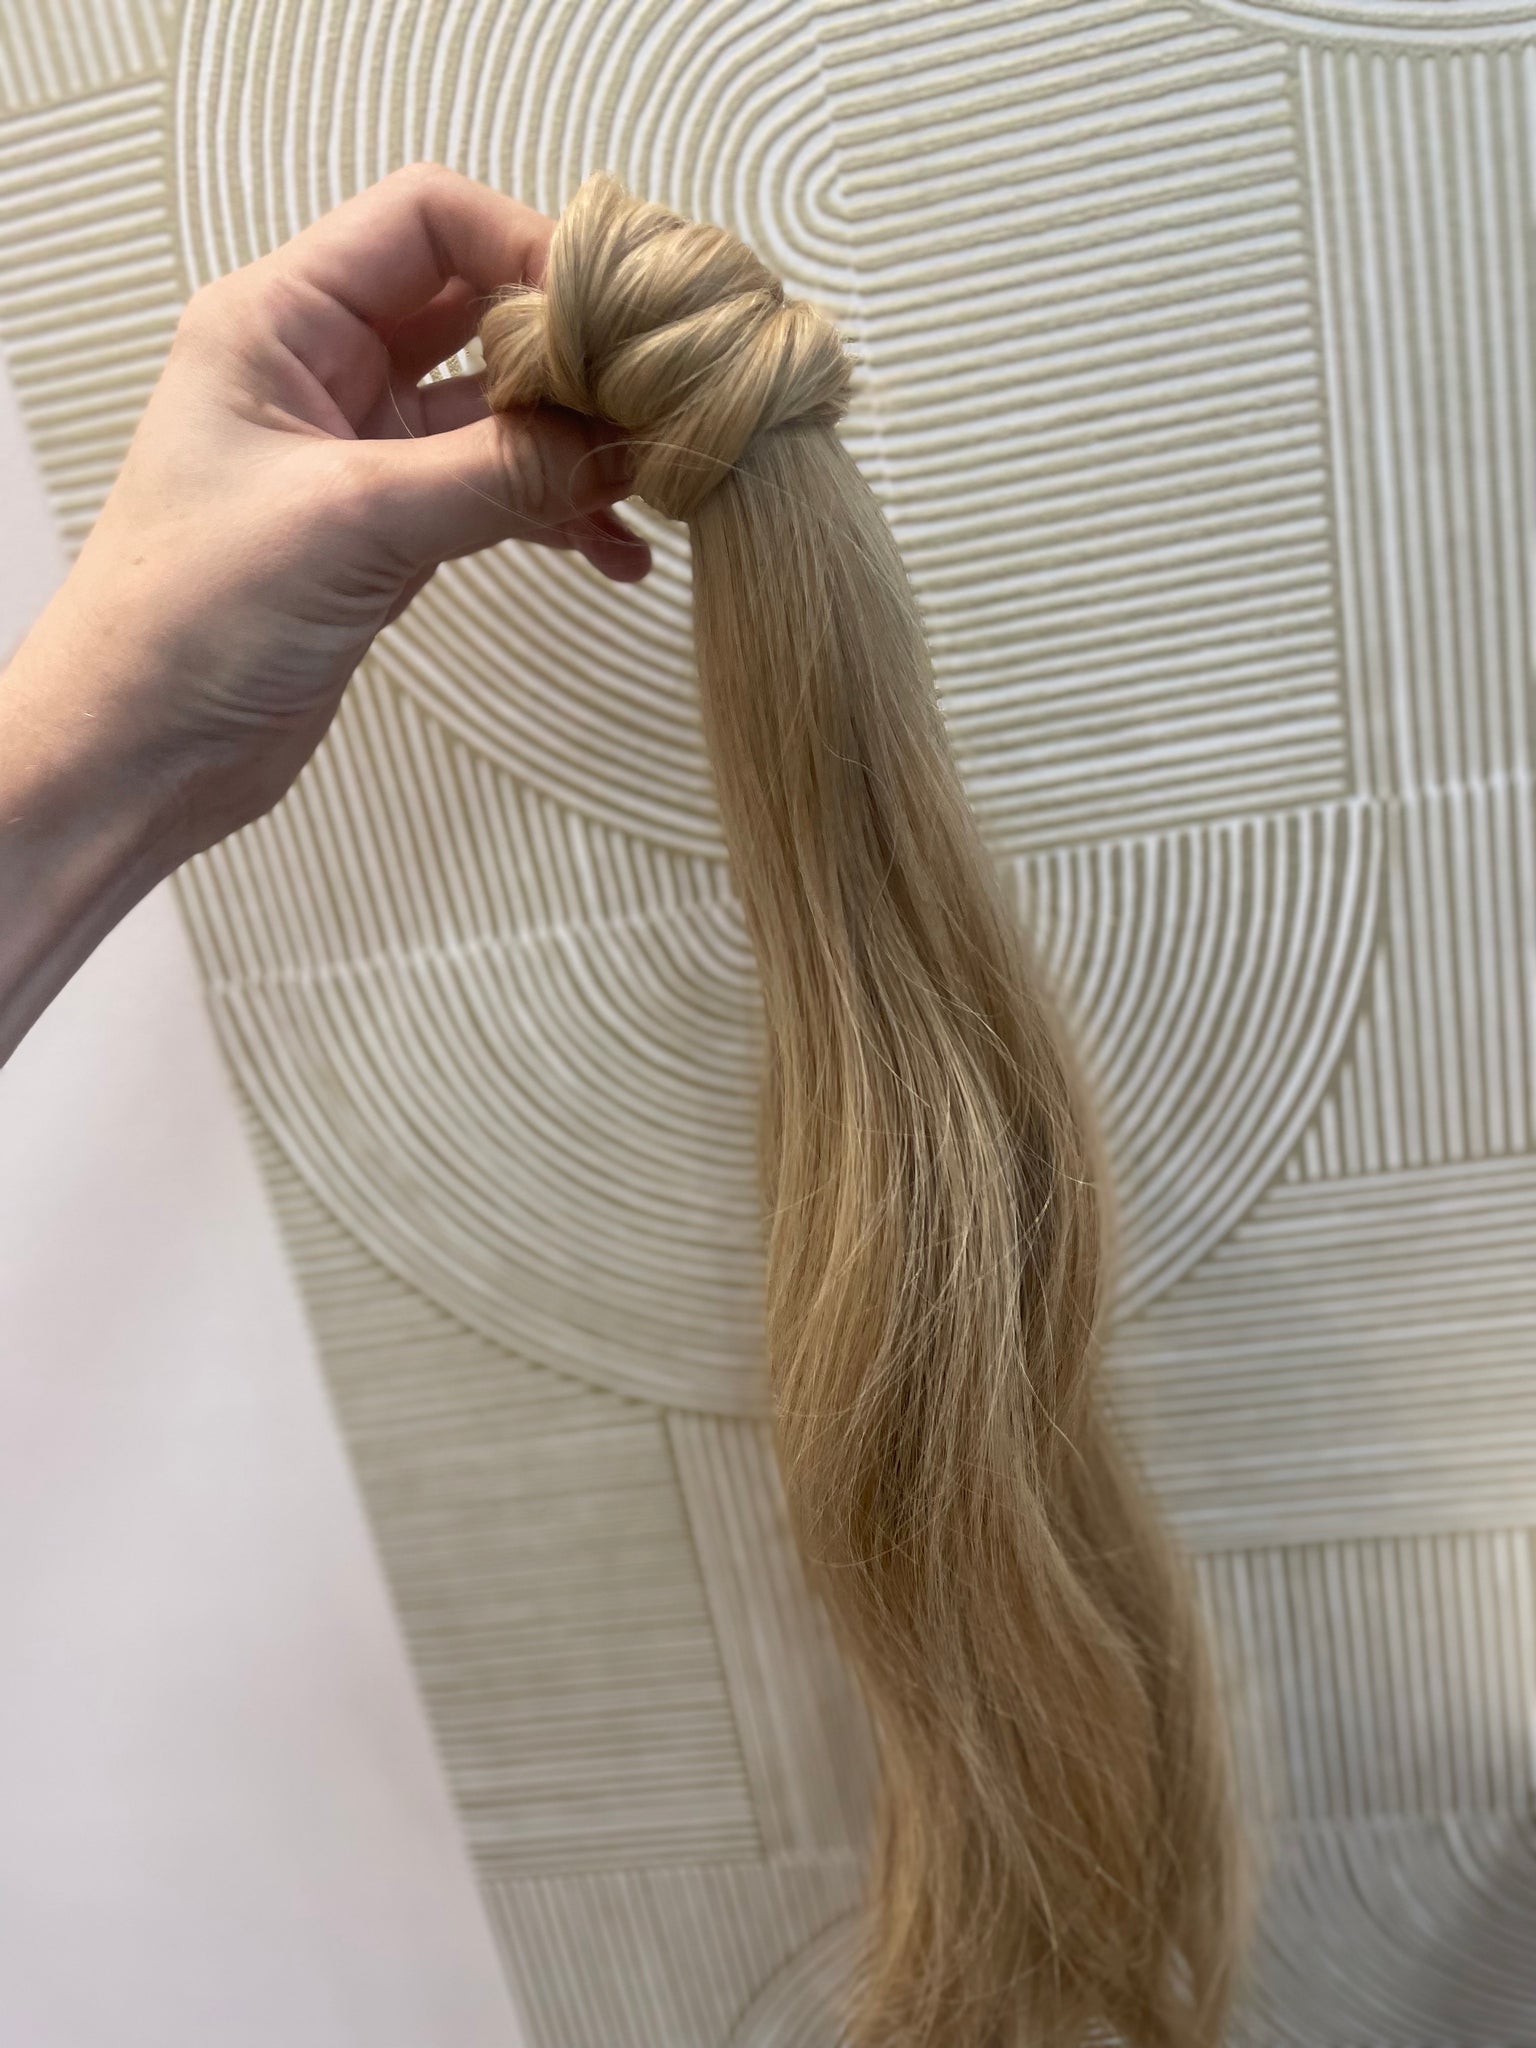 Charline - queue de cheval / 22 inch / European hair